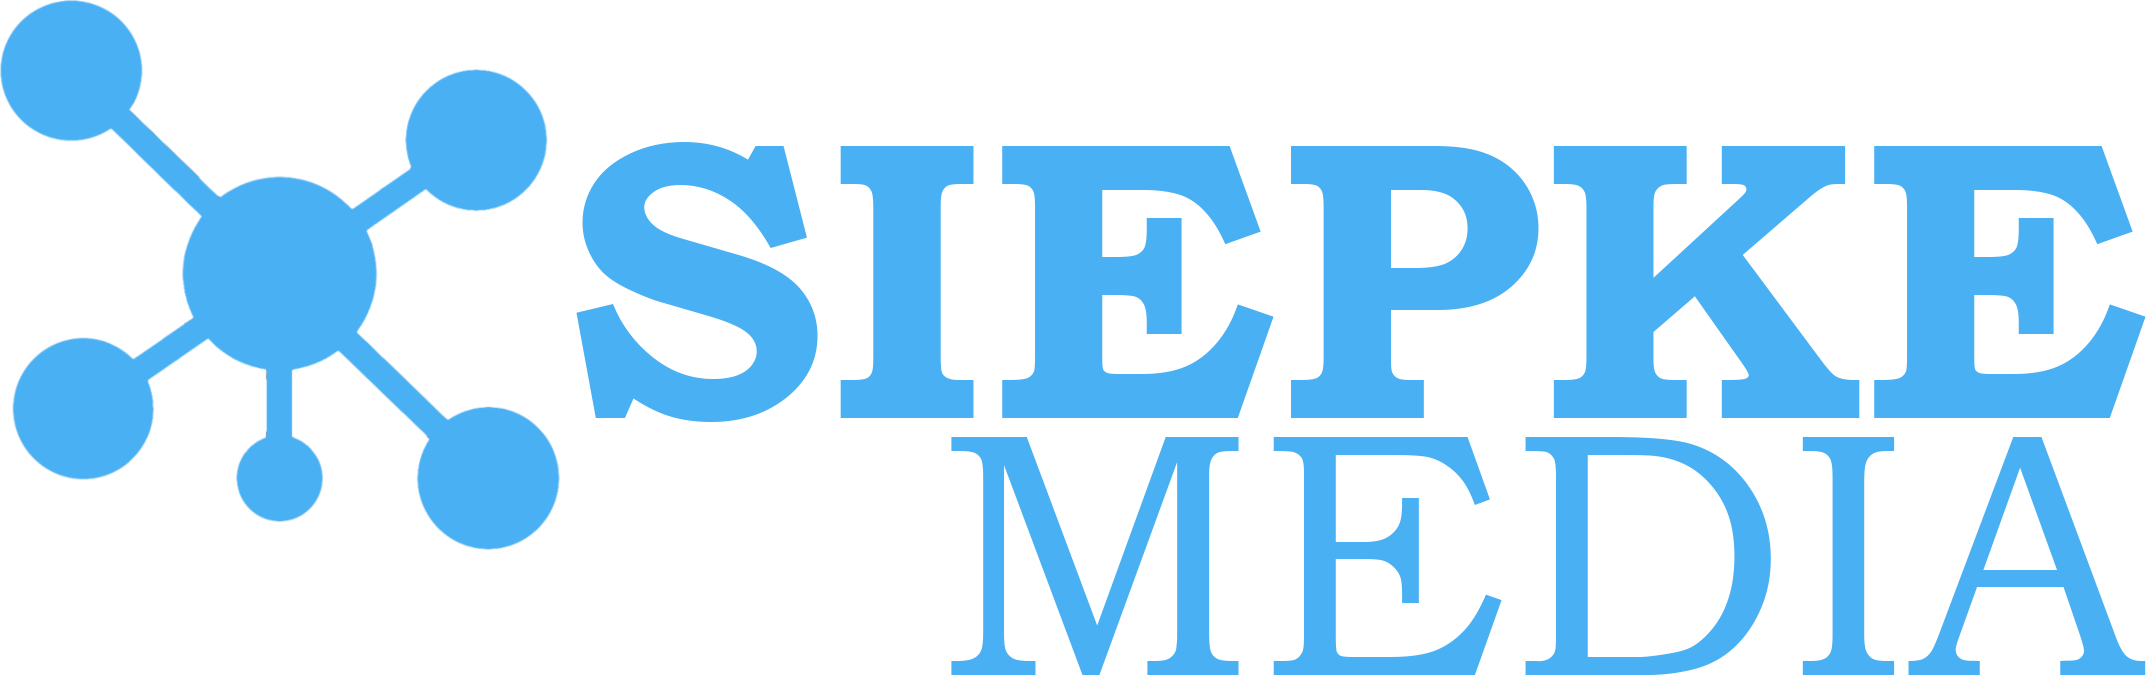 Siepke Media Logo